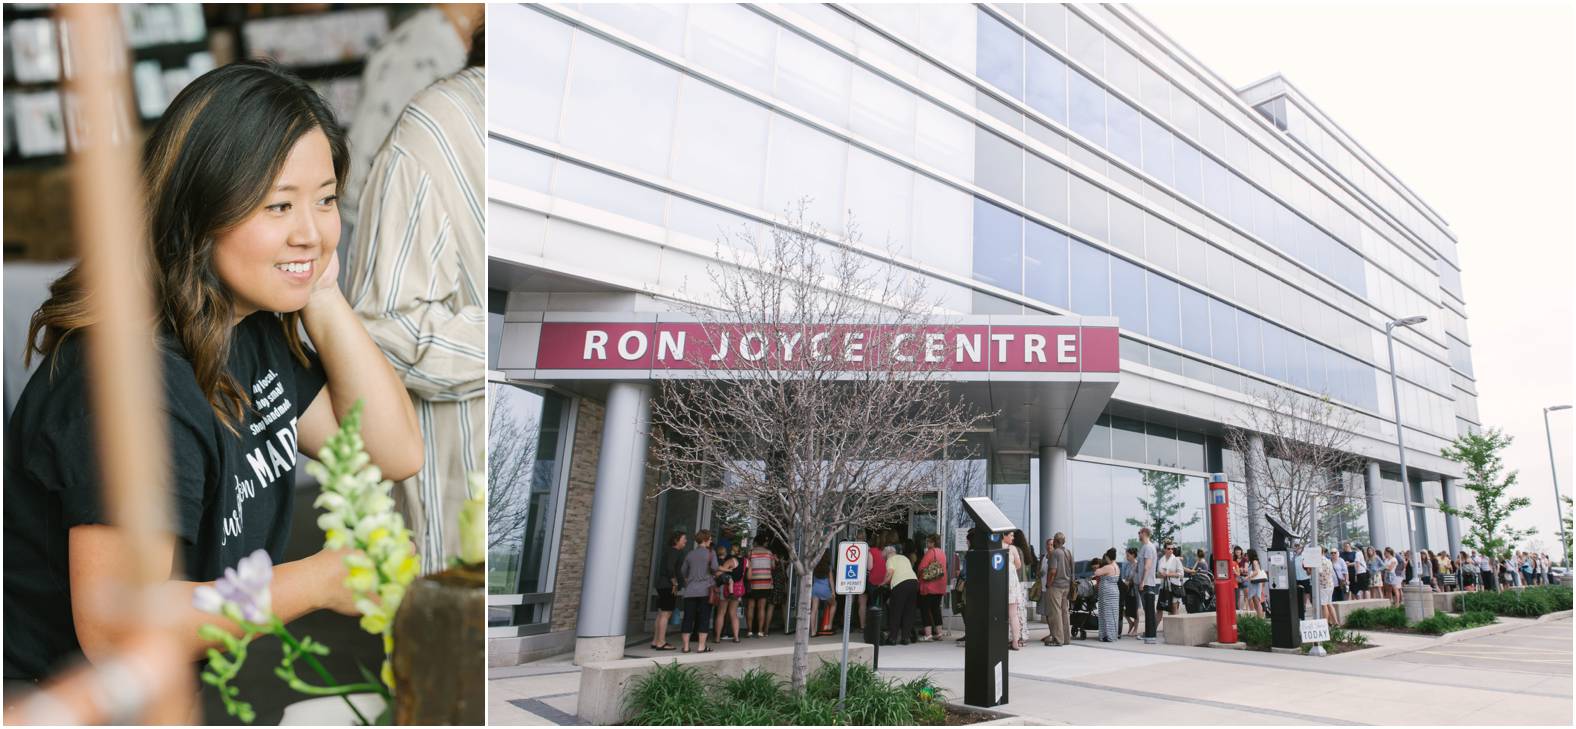 Ron Joyce Centre